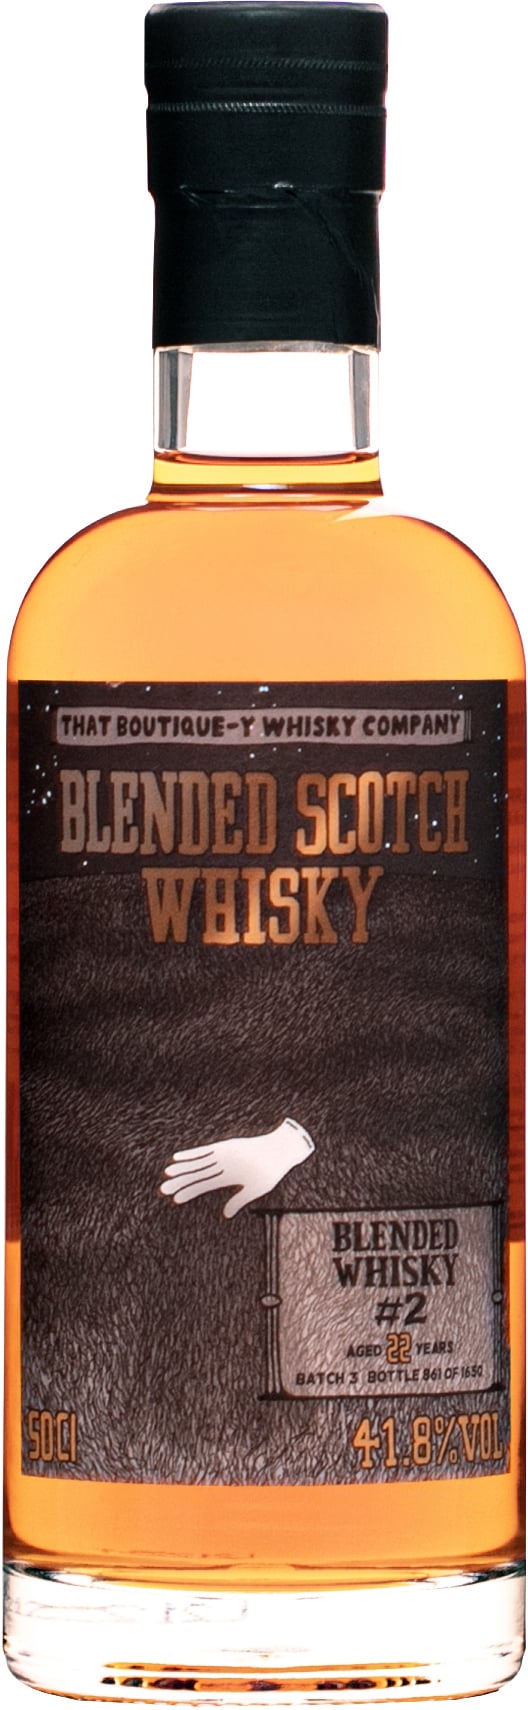 That Boutique-y Whisky Company Blended Whisky #2 22 ročná 41,8% 0,5l (čistá fľaša)